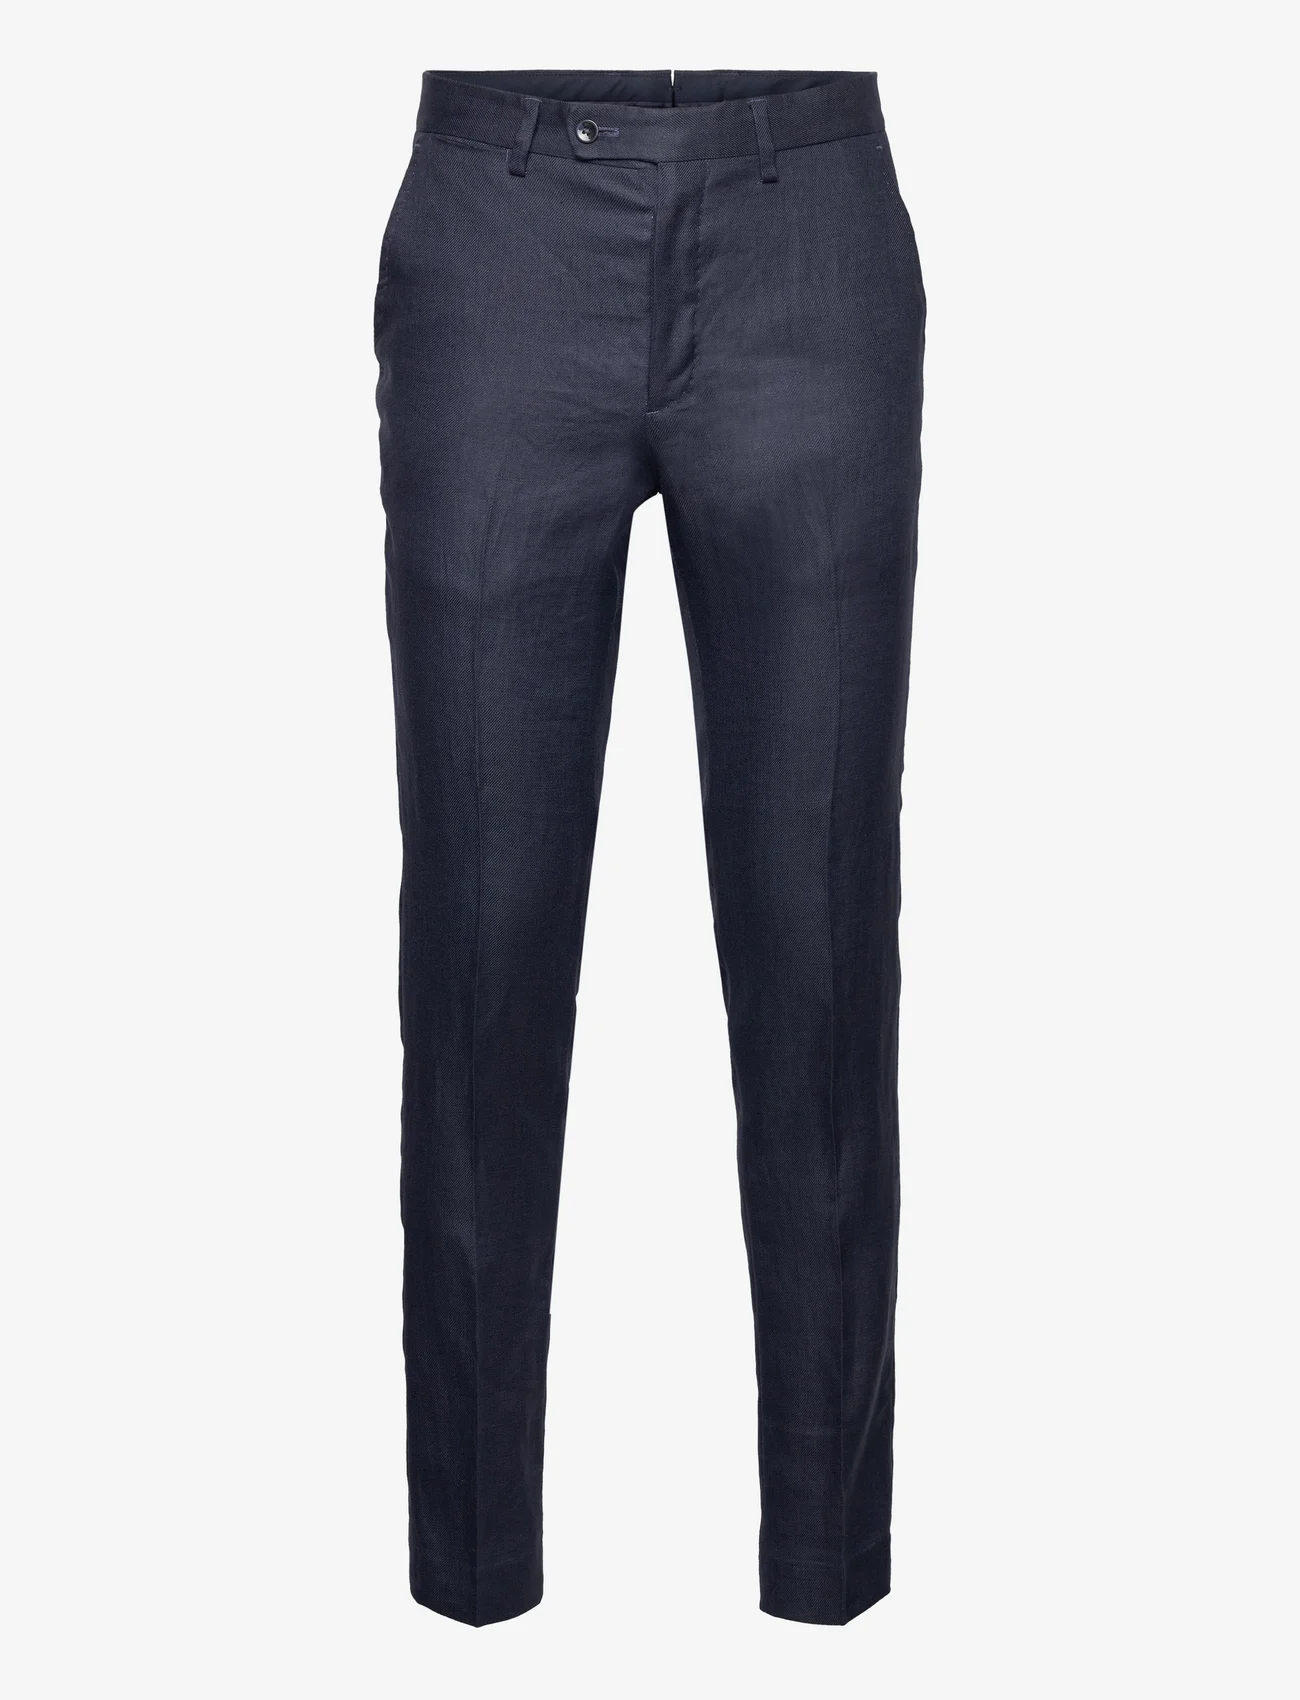 Mango - 100% linen suit trousers - navy - 0